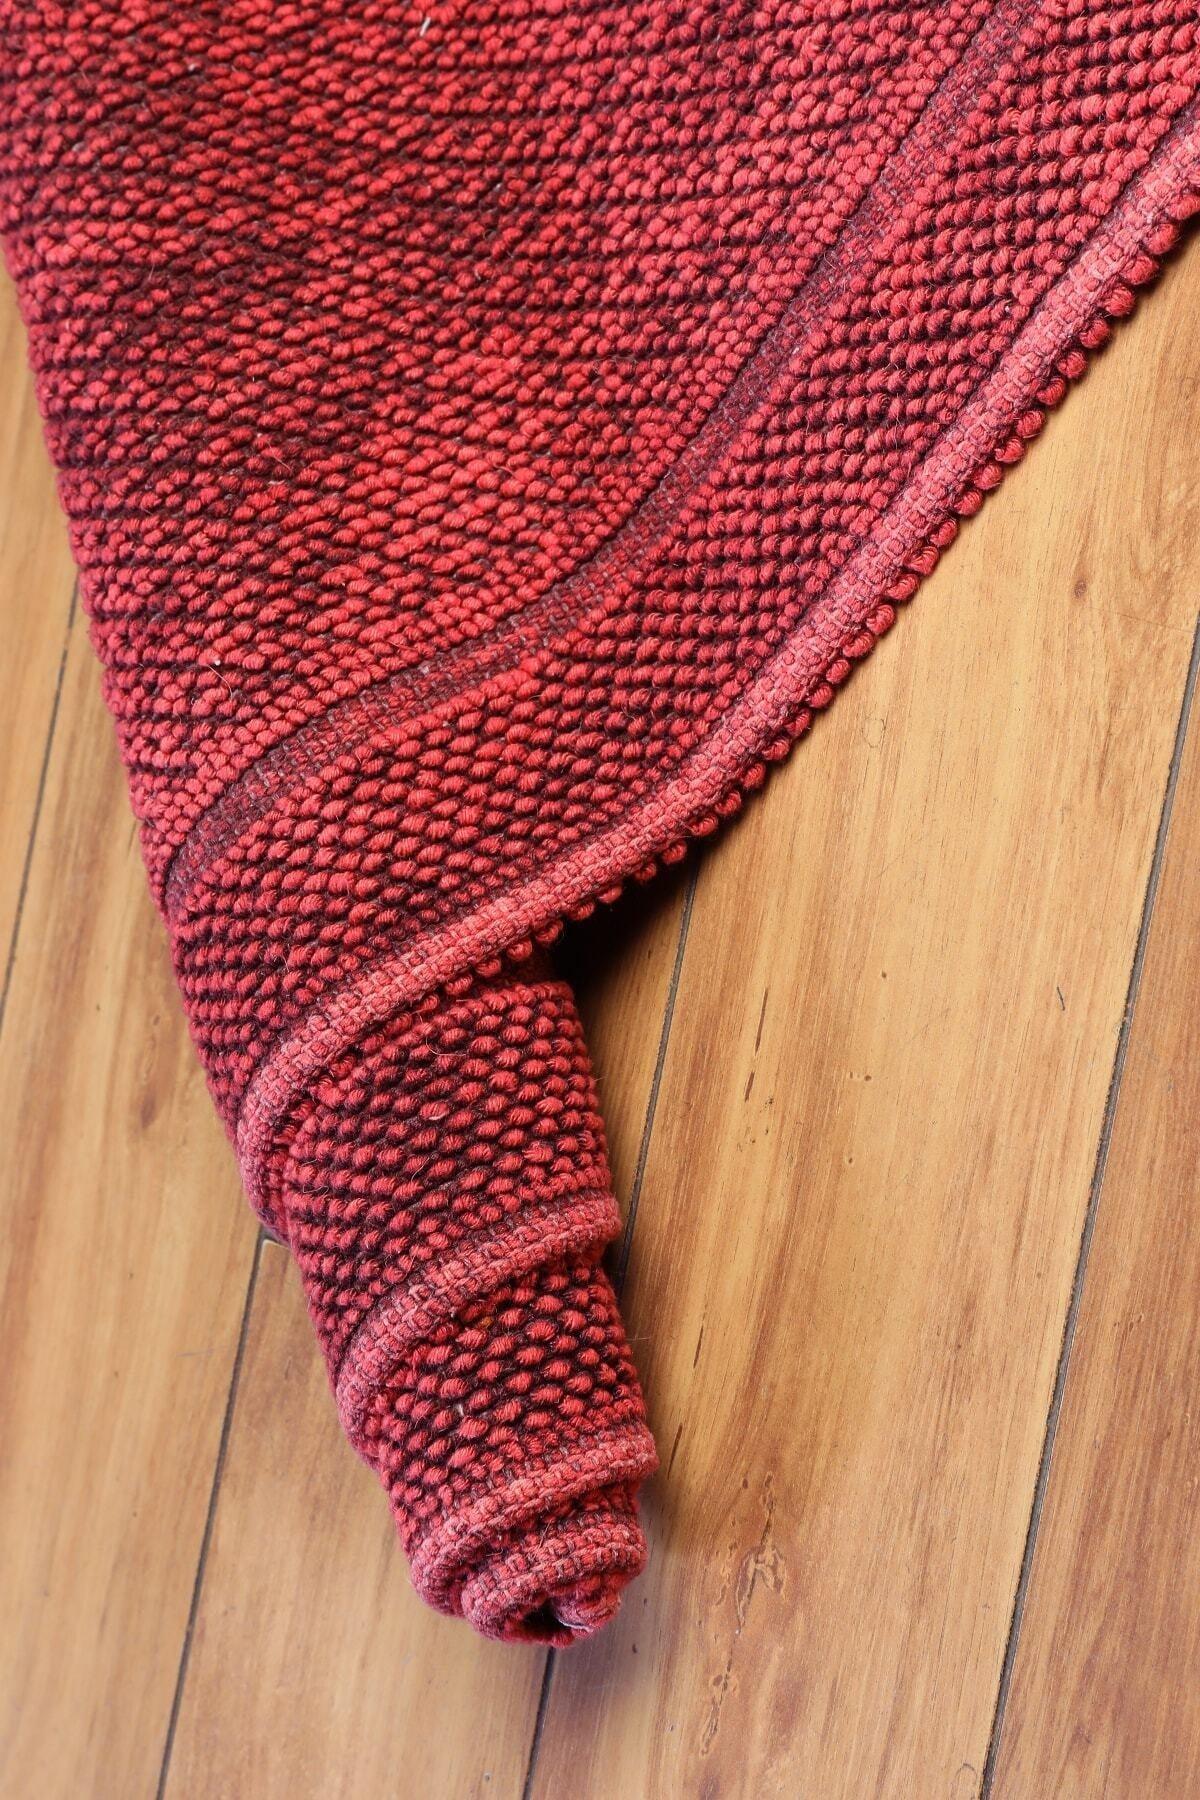 Alize Vintage Series Cotton Rug | Red - Swordslife